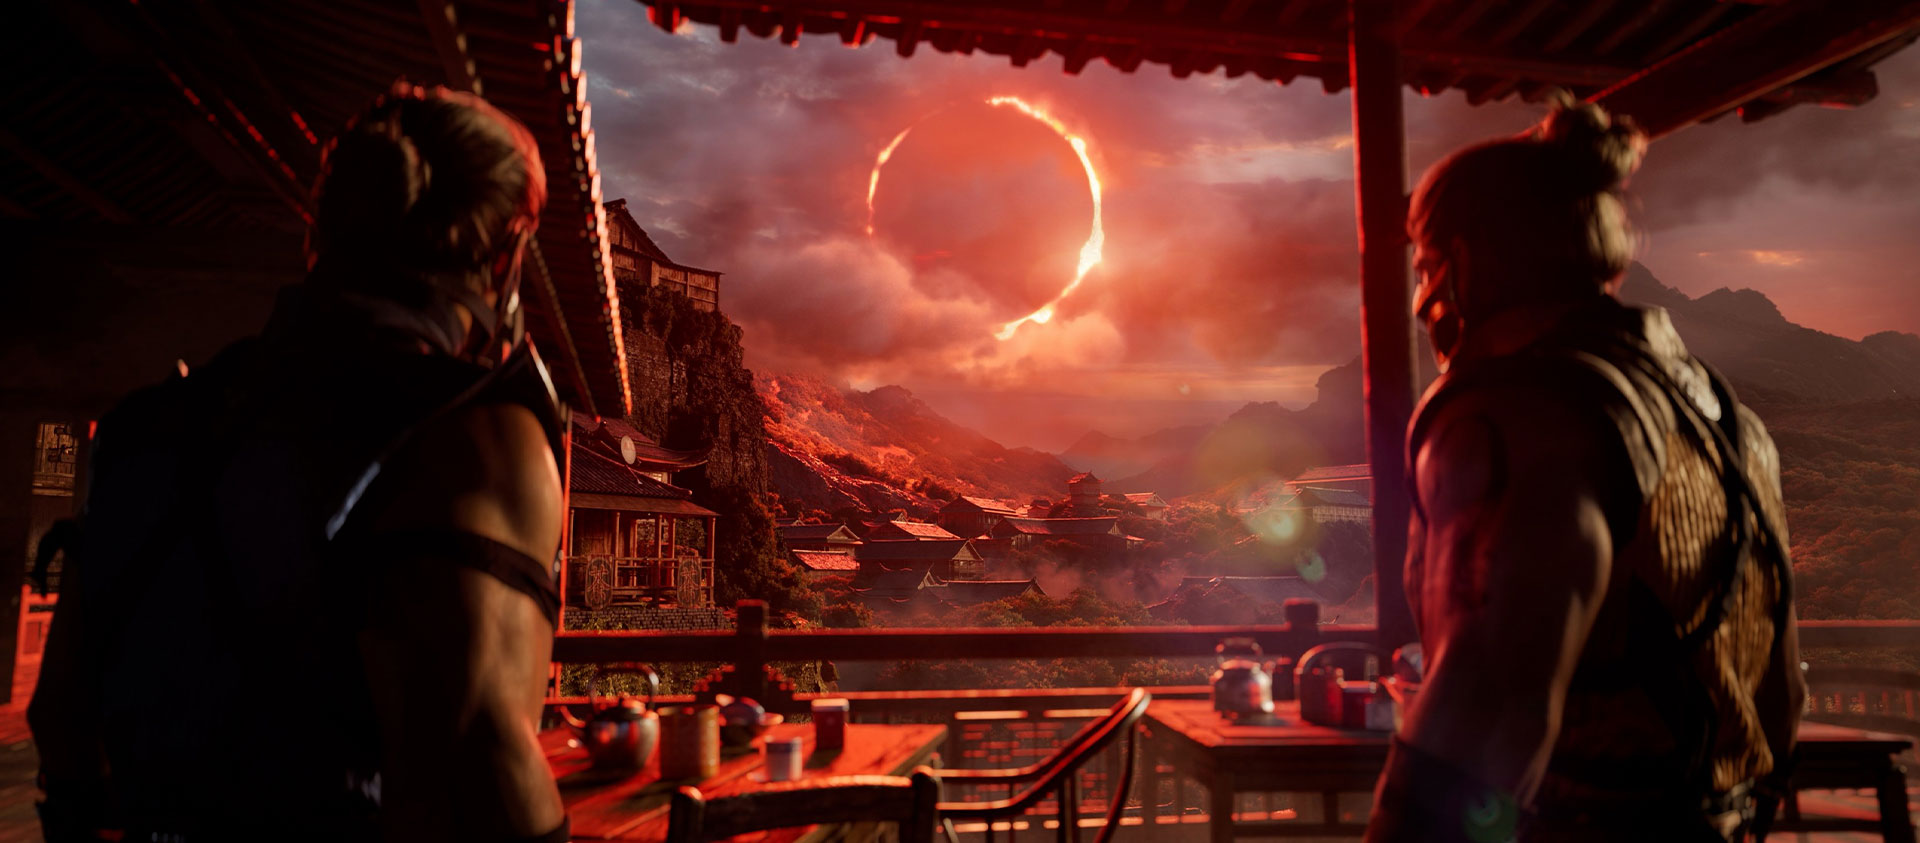 Mortal Kombat 1, twee personages onder een afdak staren naar een rode zonsverduistering in de verte